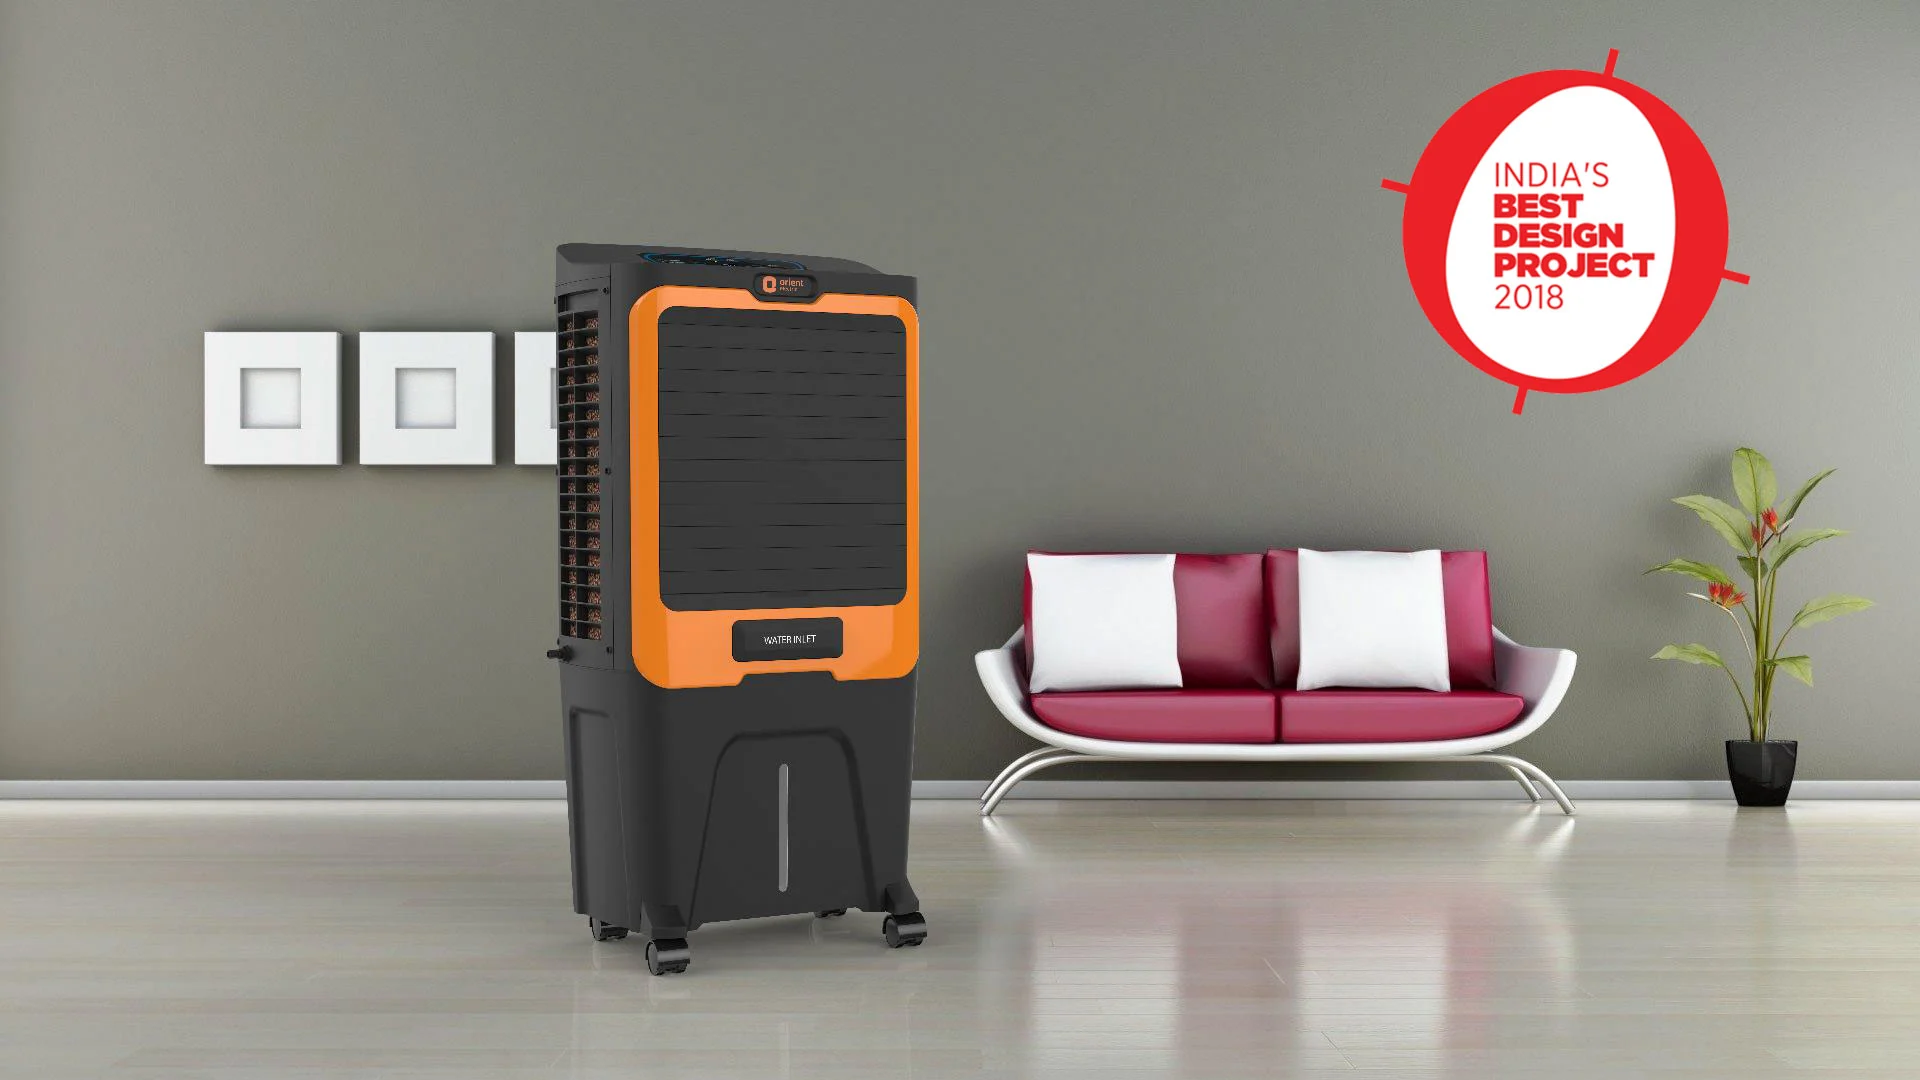 Product design fornext-gensmart appliances - Orient Electric